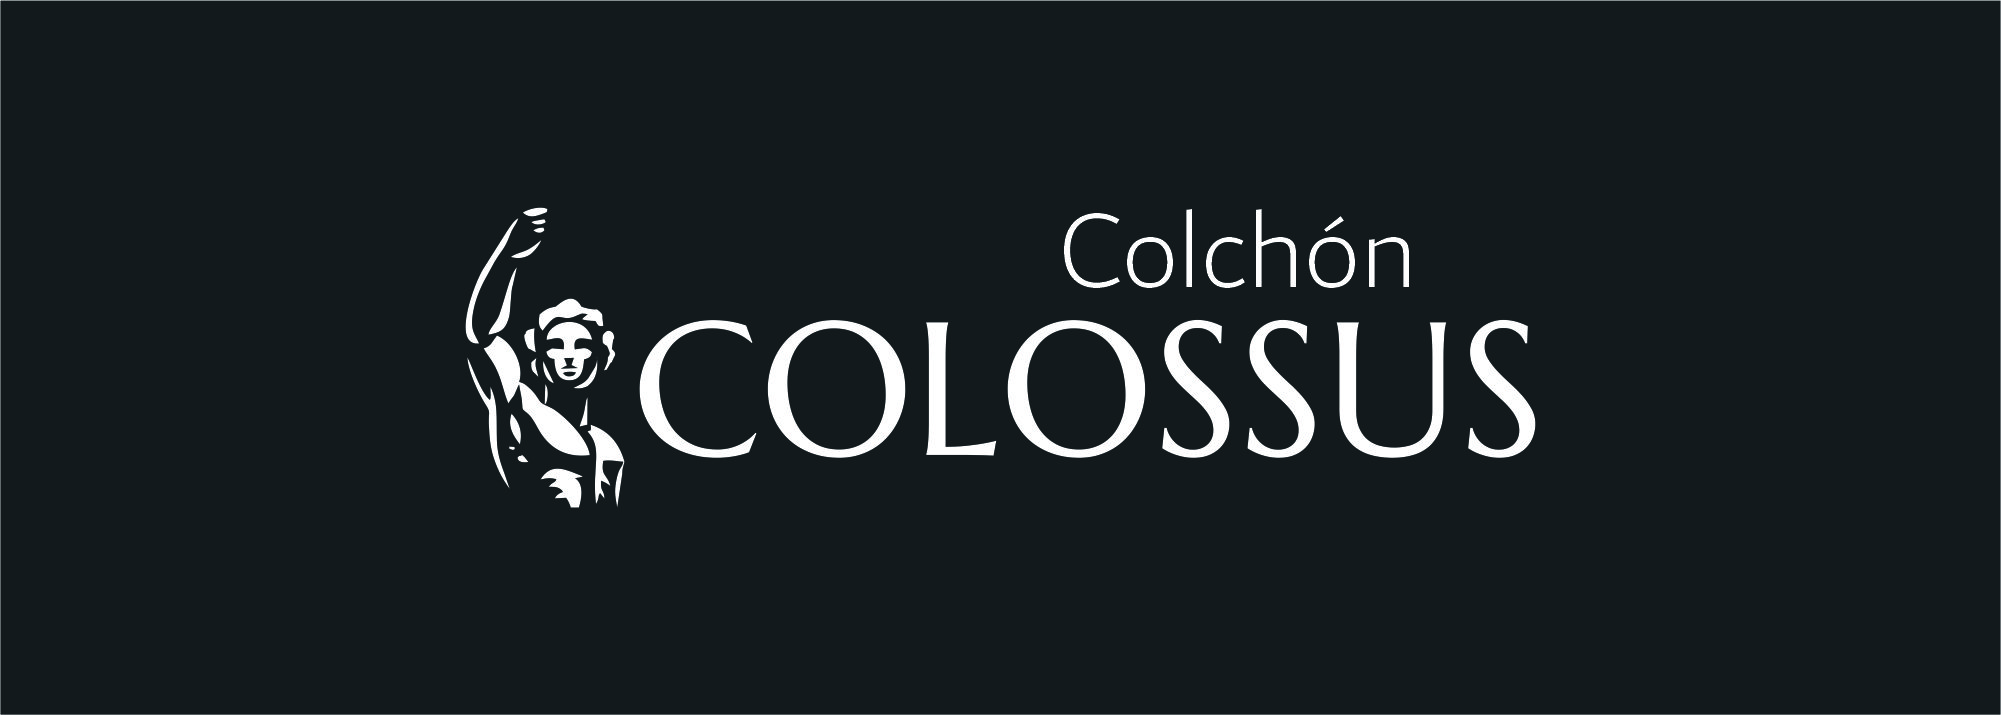 Colossus Adapta, el mejor colchón personalizable del mercado